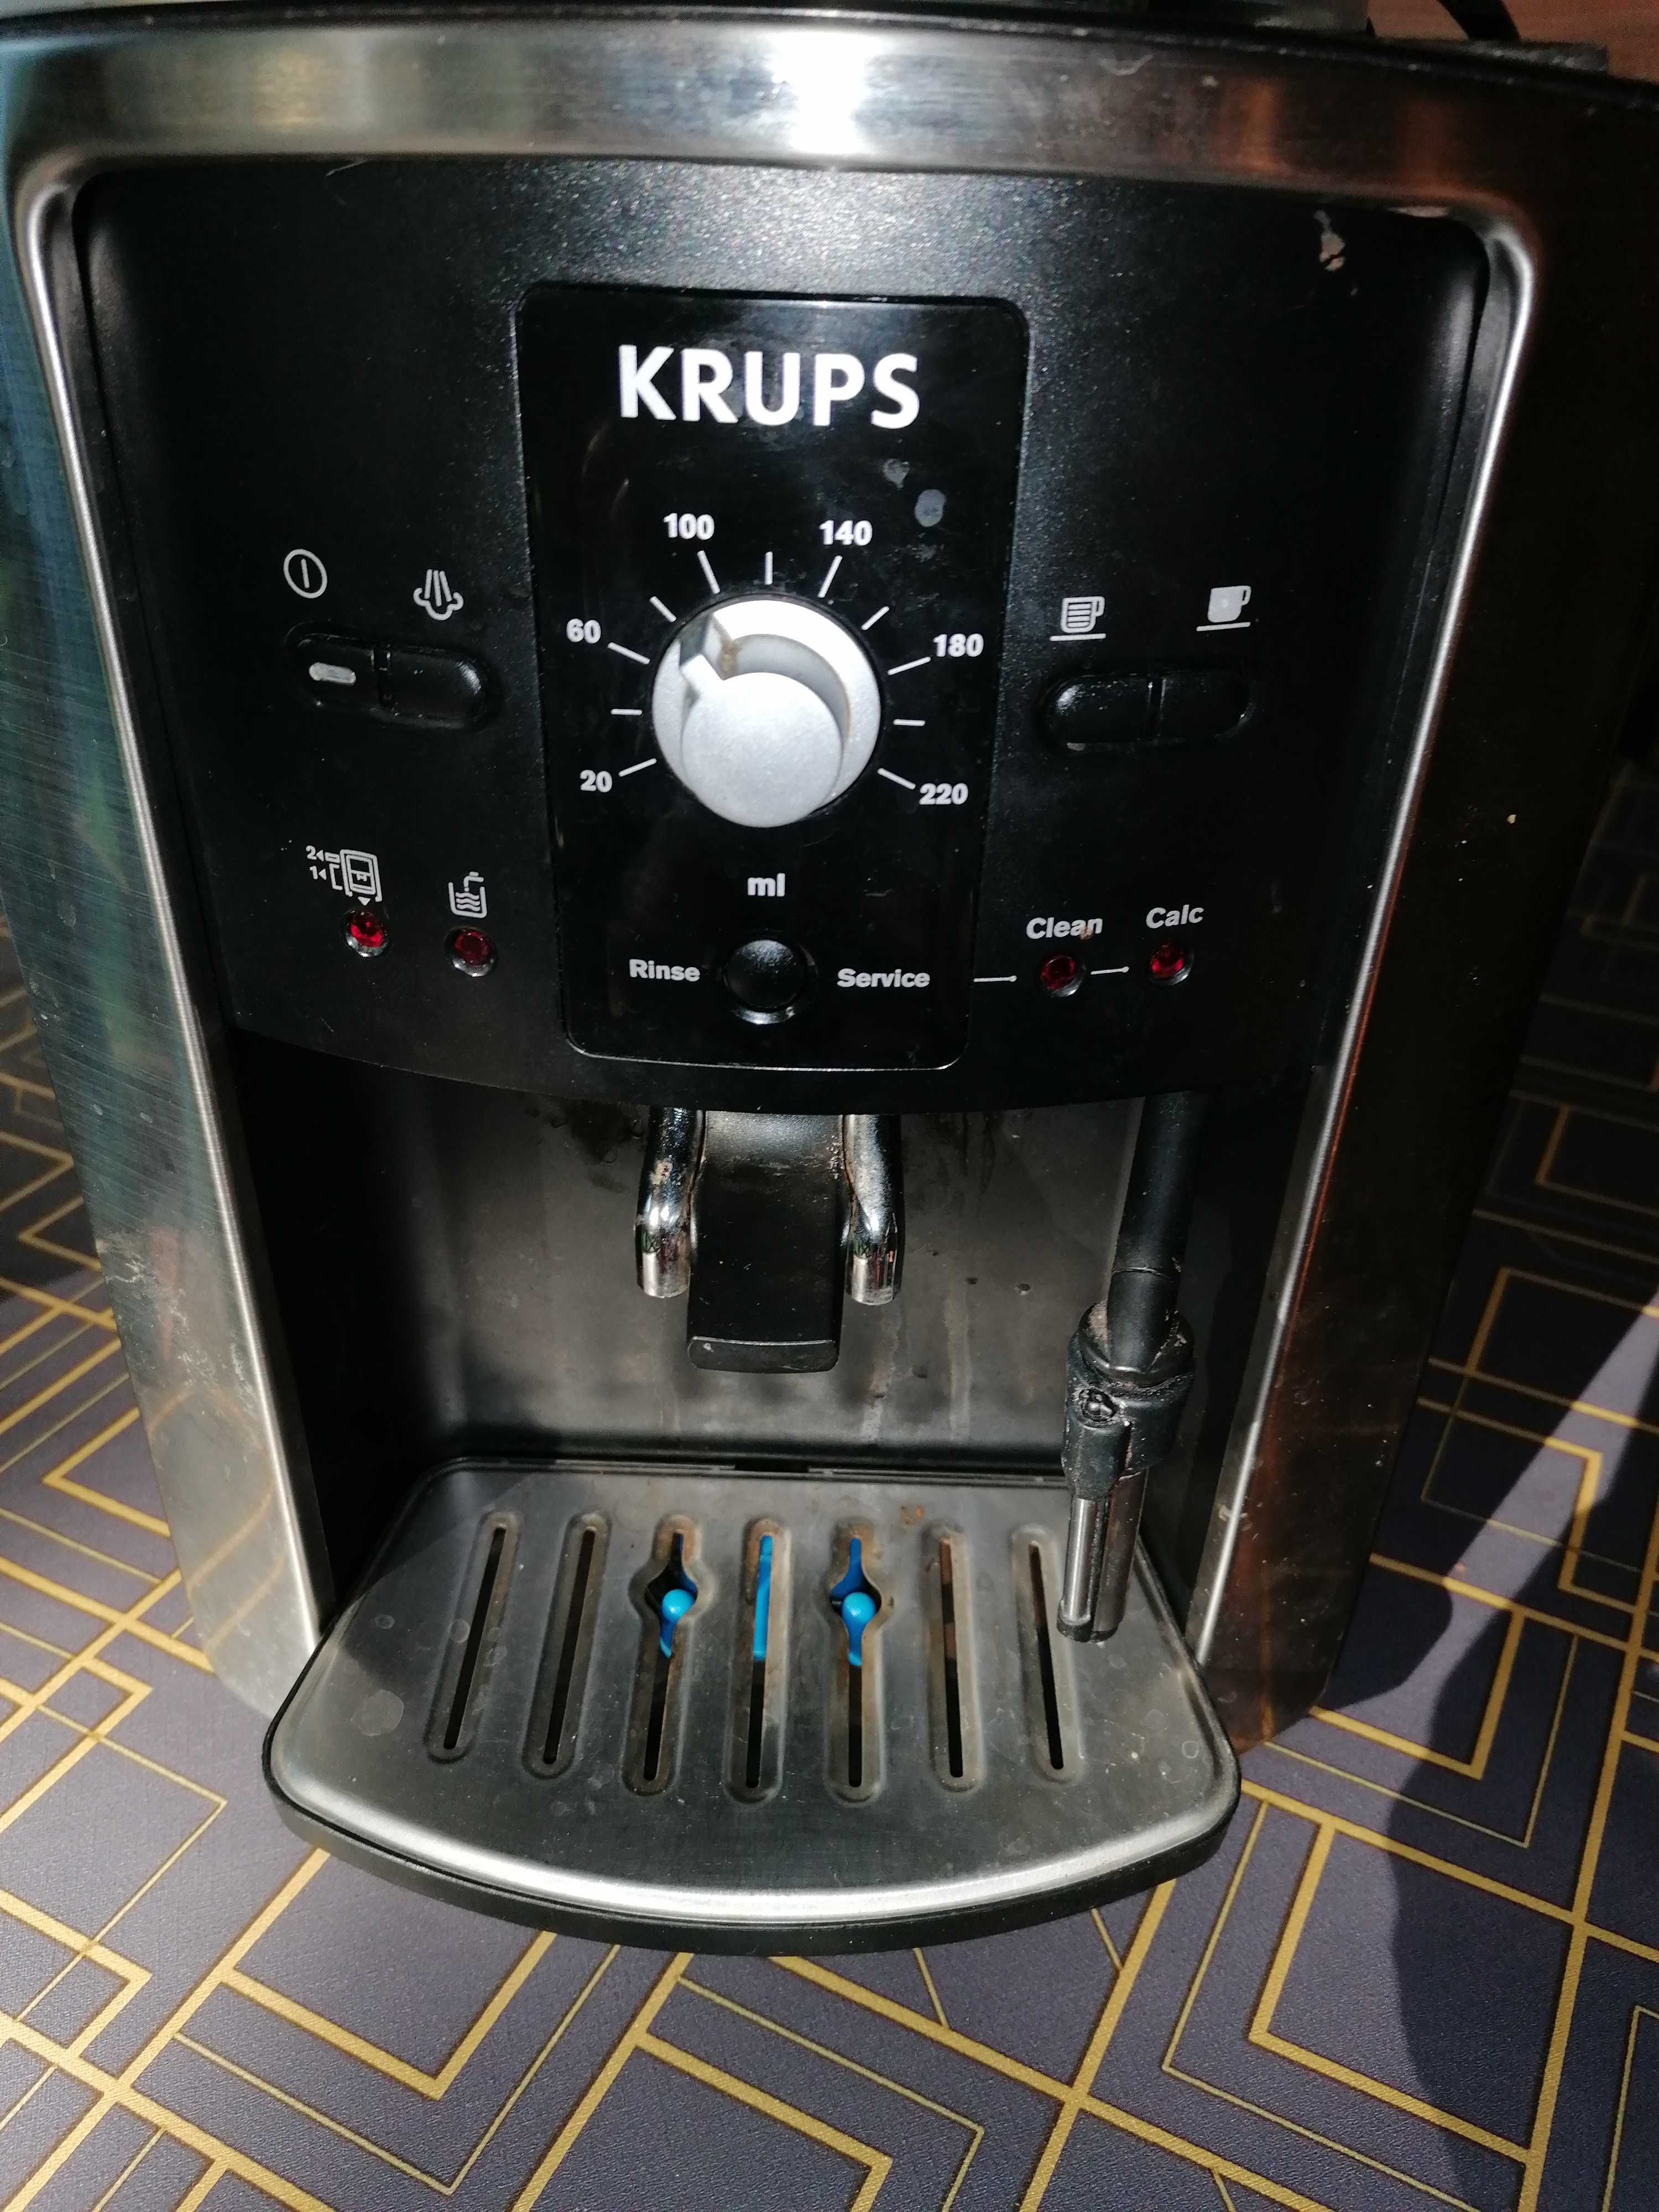 Eksores do kawy automatyczny Krups  model EA8010 uszkodzony